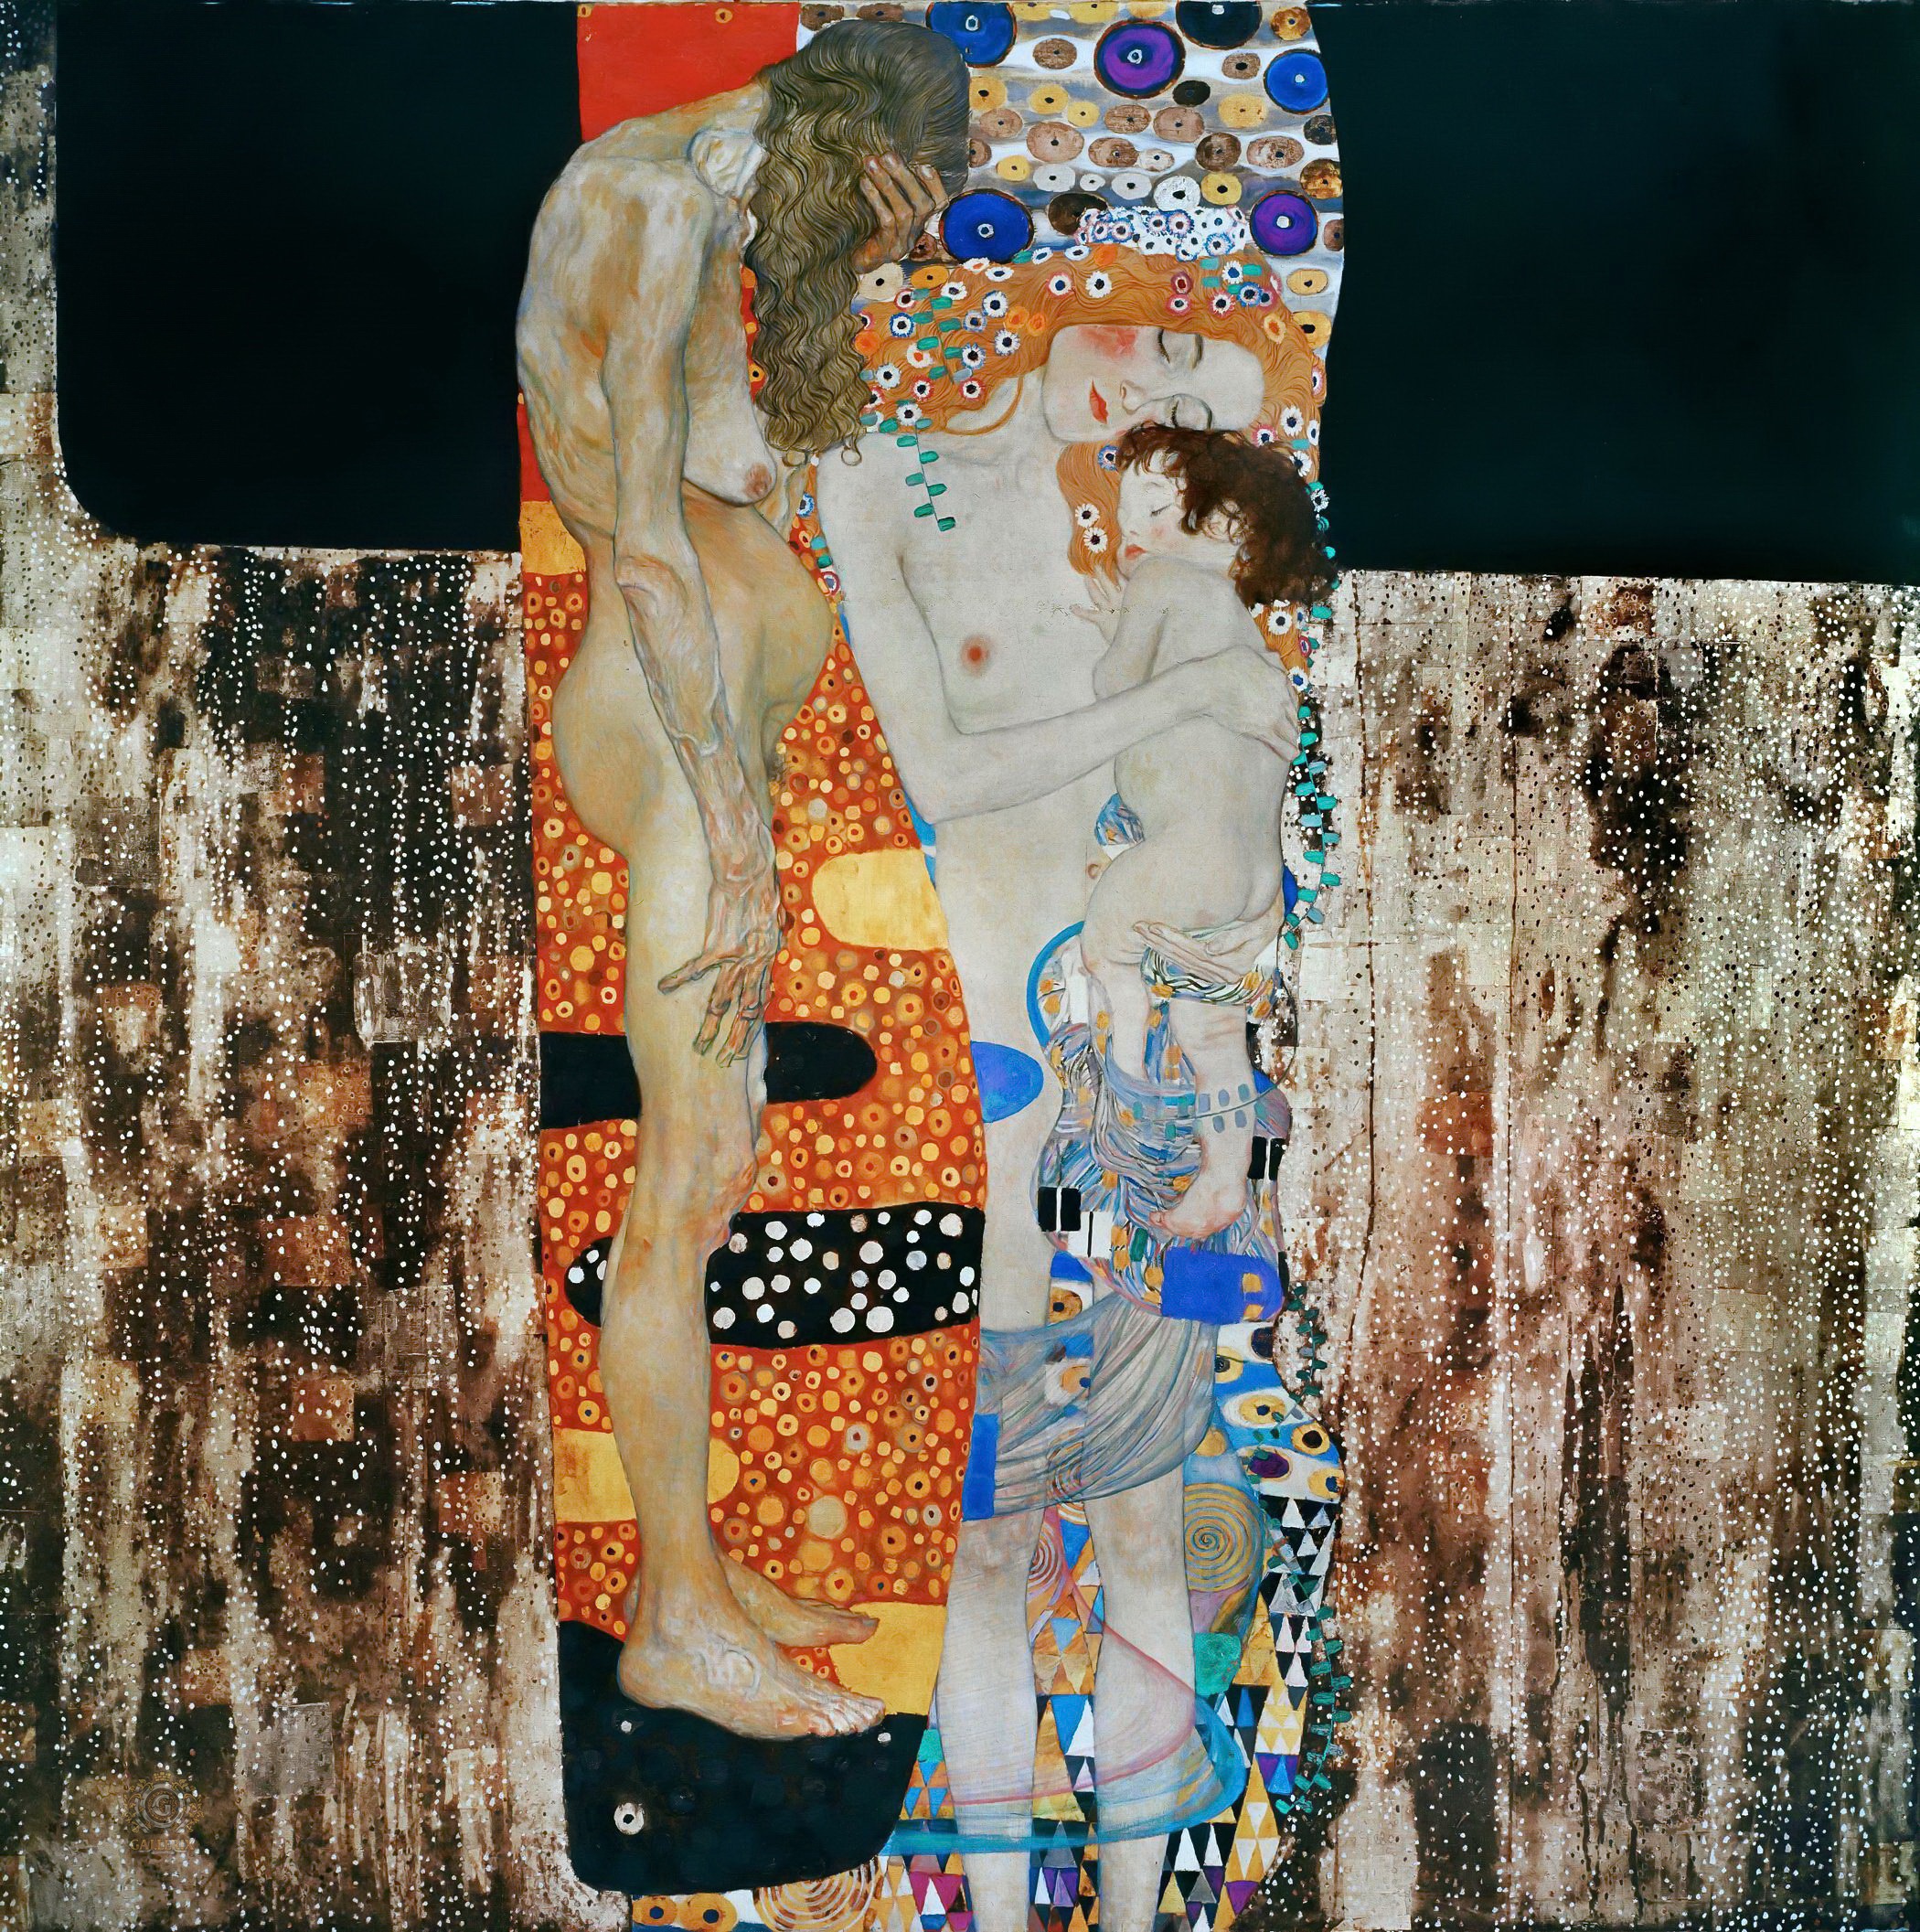 Густав Климт. "Три возраста женщины". 1905. Национальная галерея современного искусства, Рим.